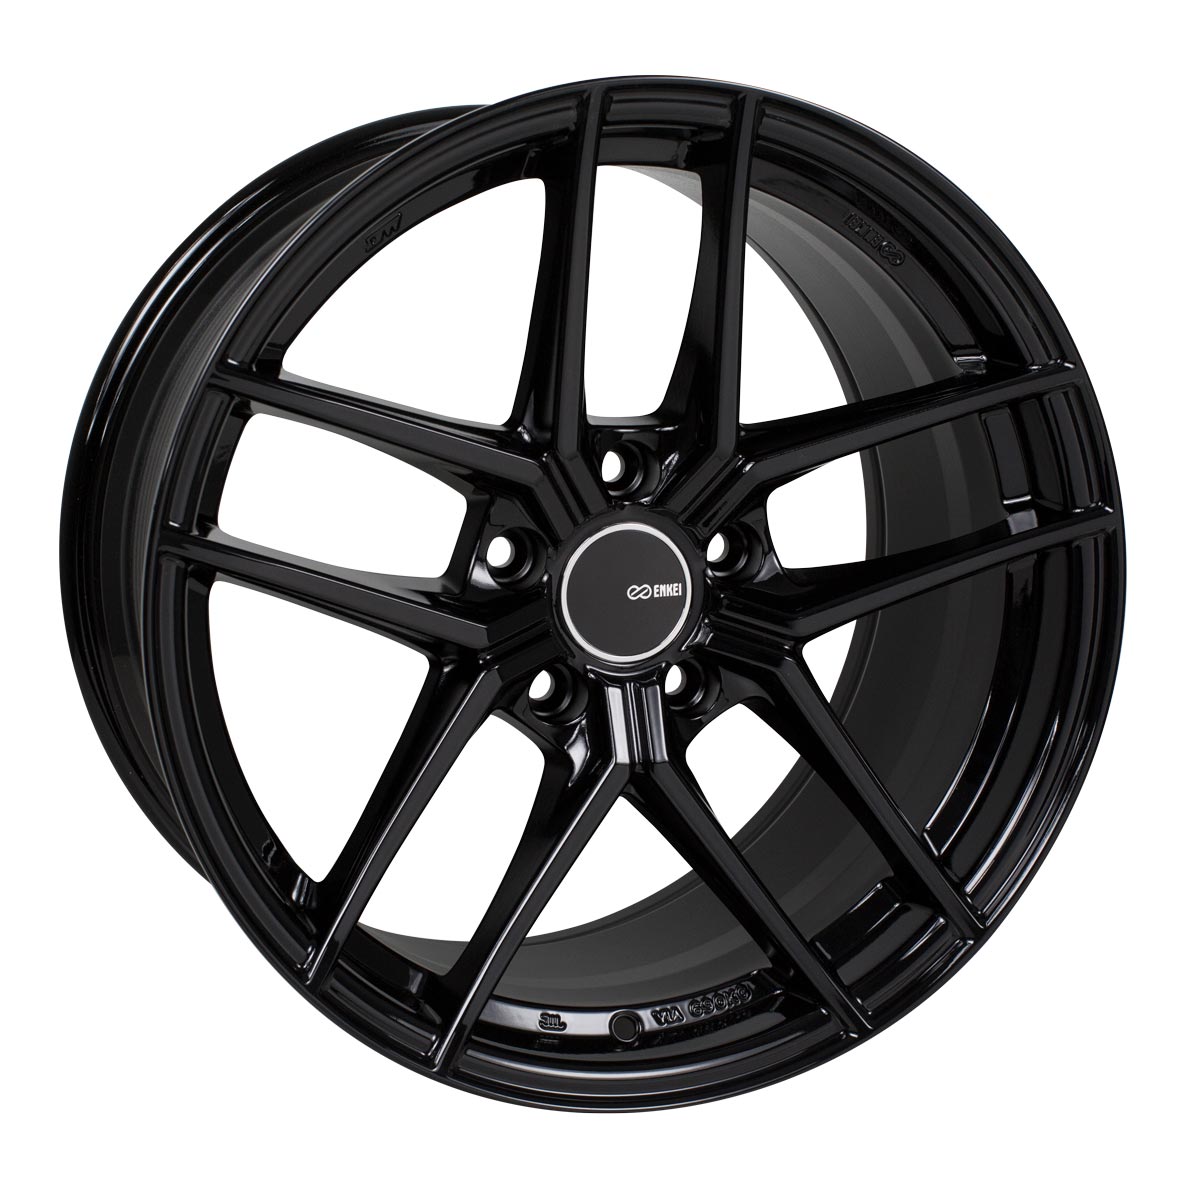 Enkei TY-5 Wheel Gloss Black 18x8.5 +50 5x114.3 498-885-6550BK